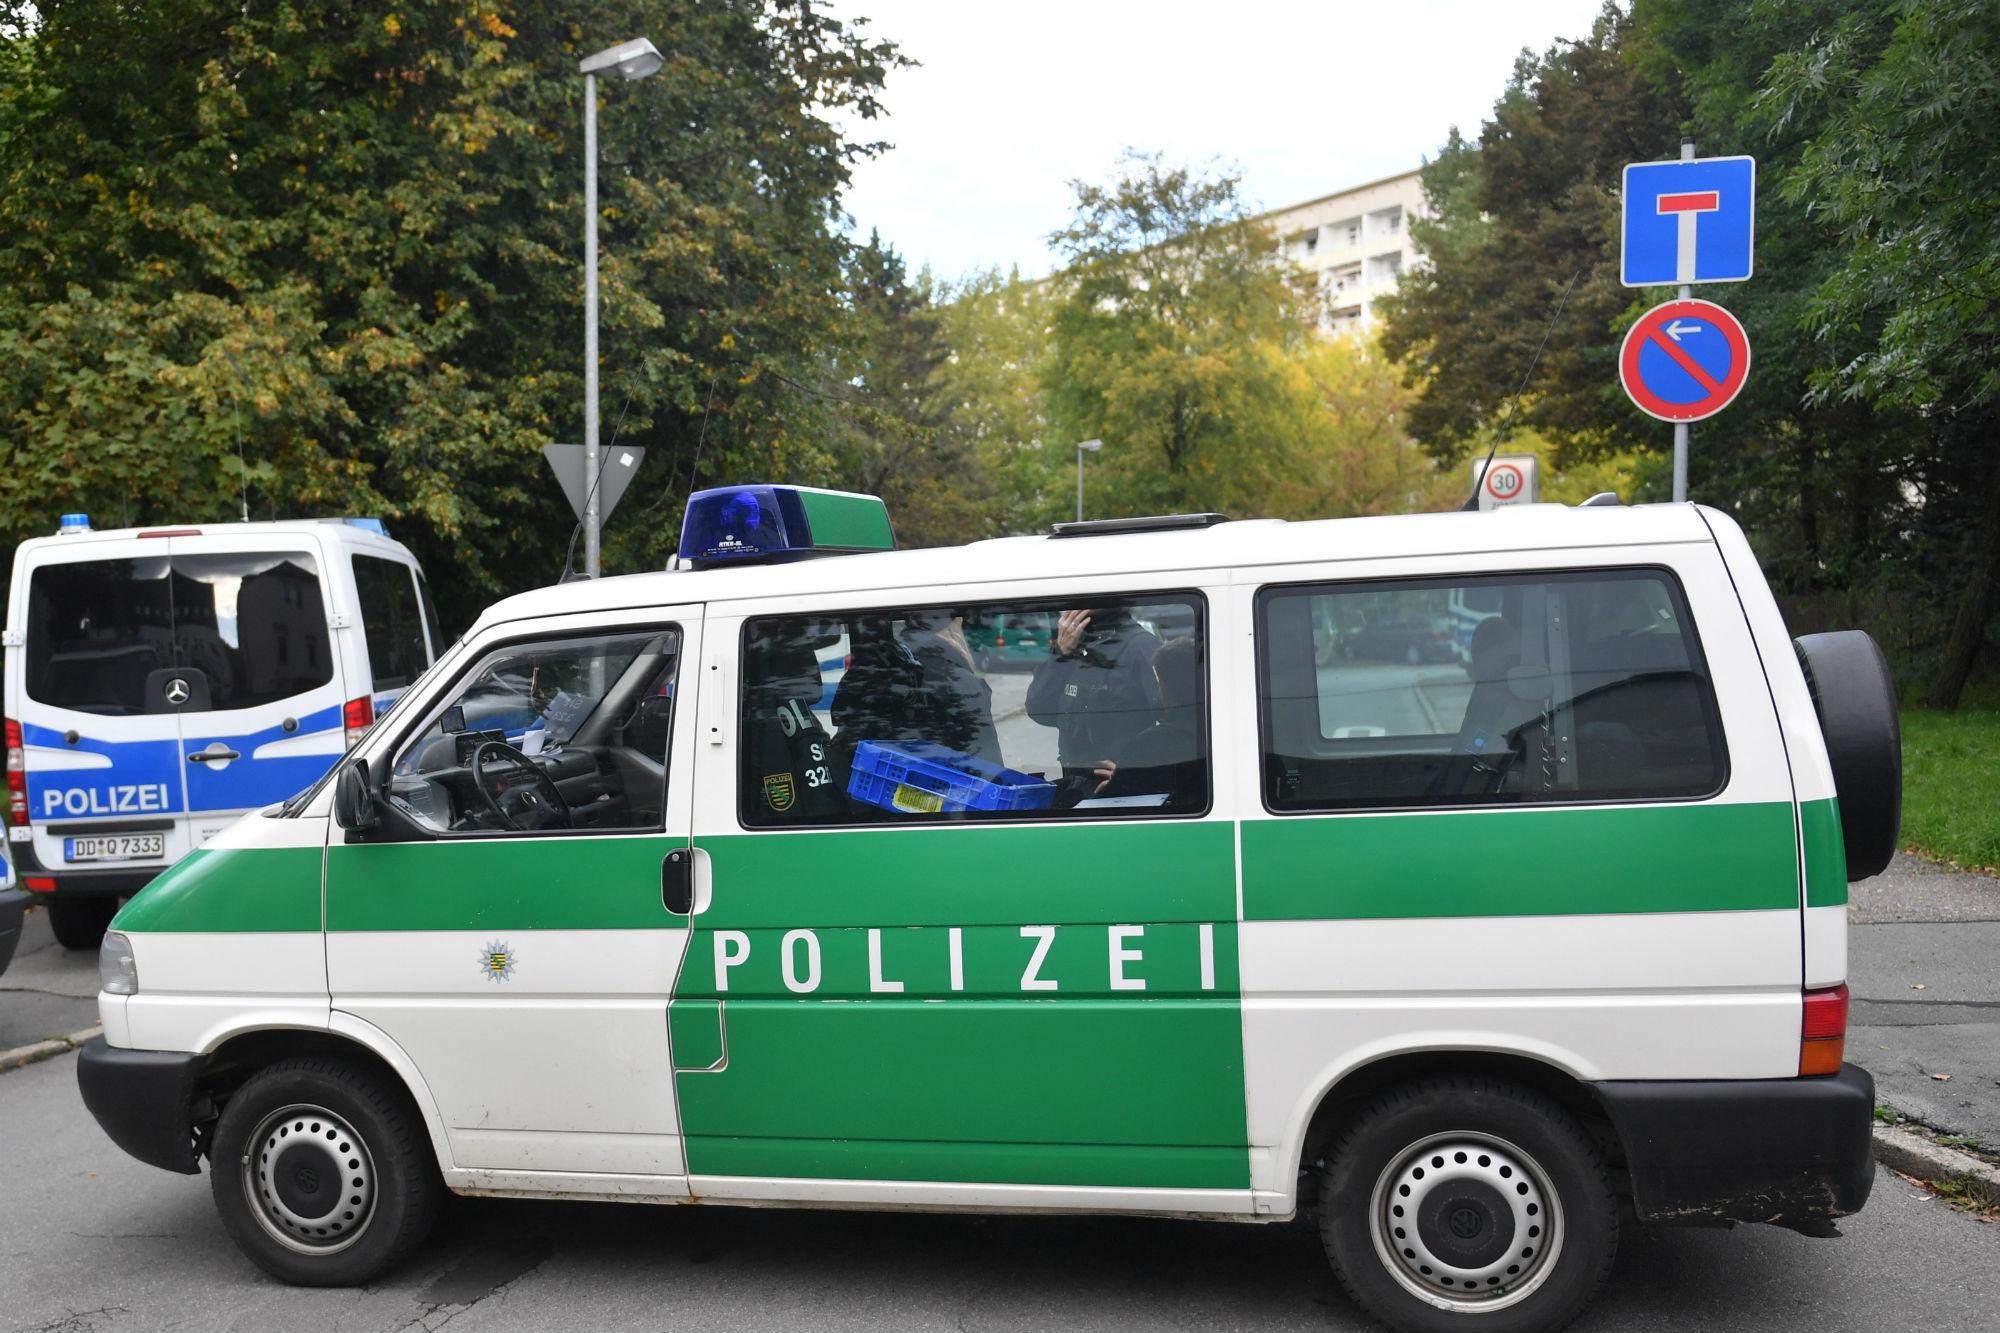 Germania - sparatoria a Lautlingen: cacciatore uccide 3 familiari e si suicida